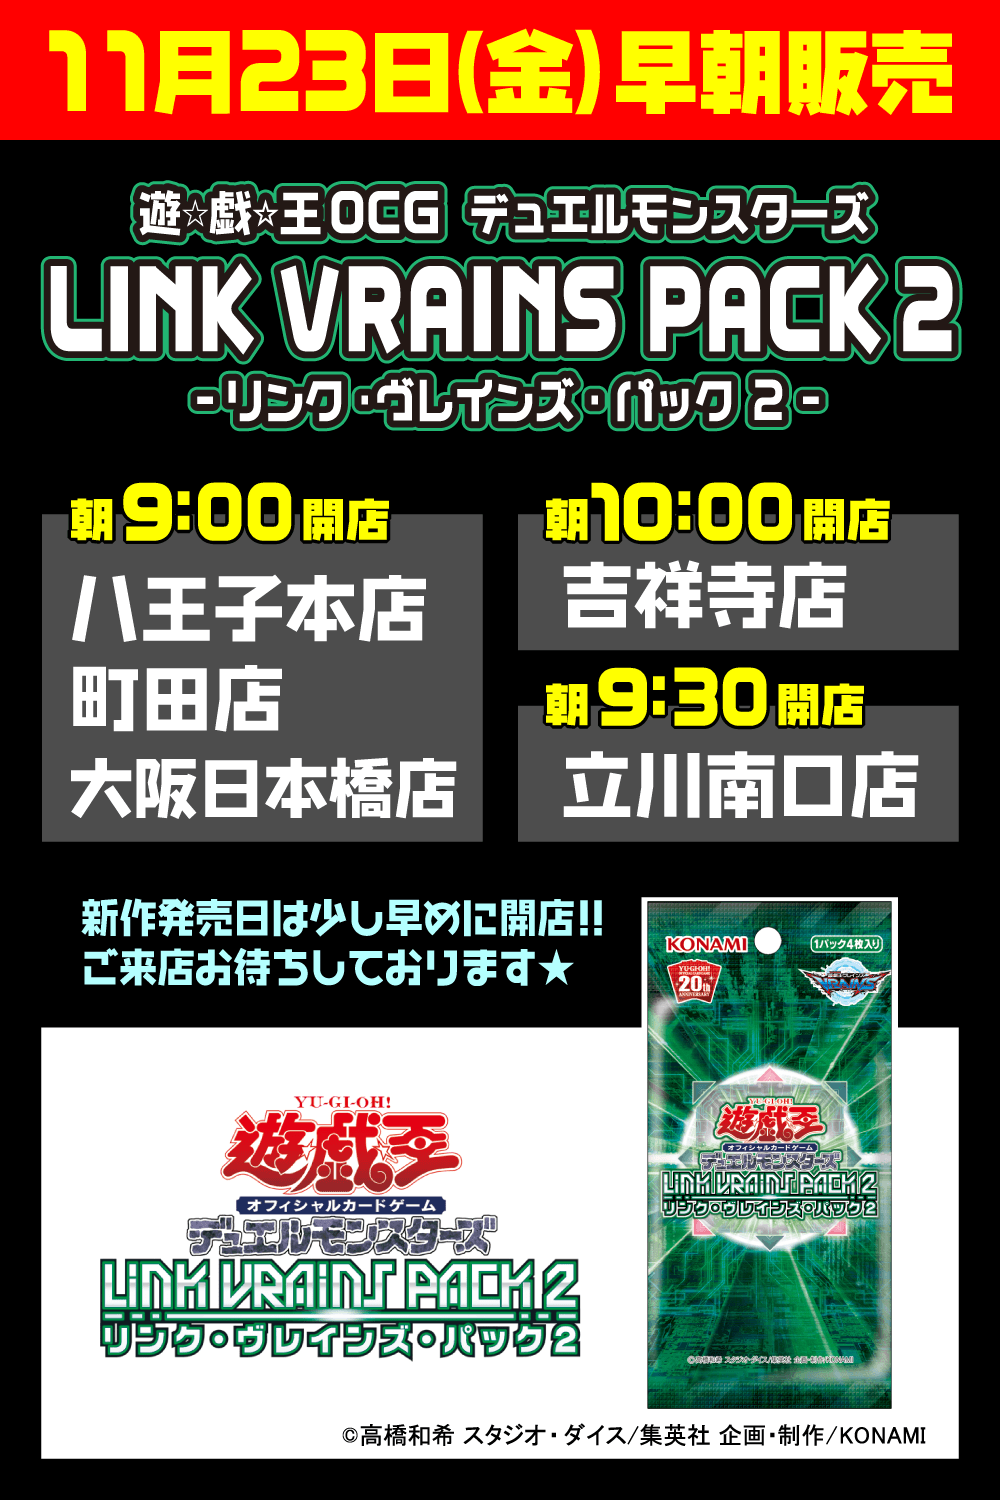 遊戯王OCG デュエルモンスターズ「LINK VRAINS PACK 2 -リンク・ヴレインズ・パック２-」早朝販売2